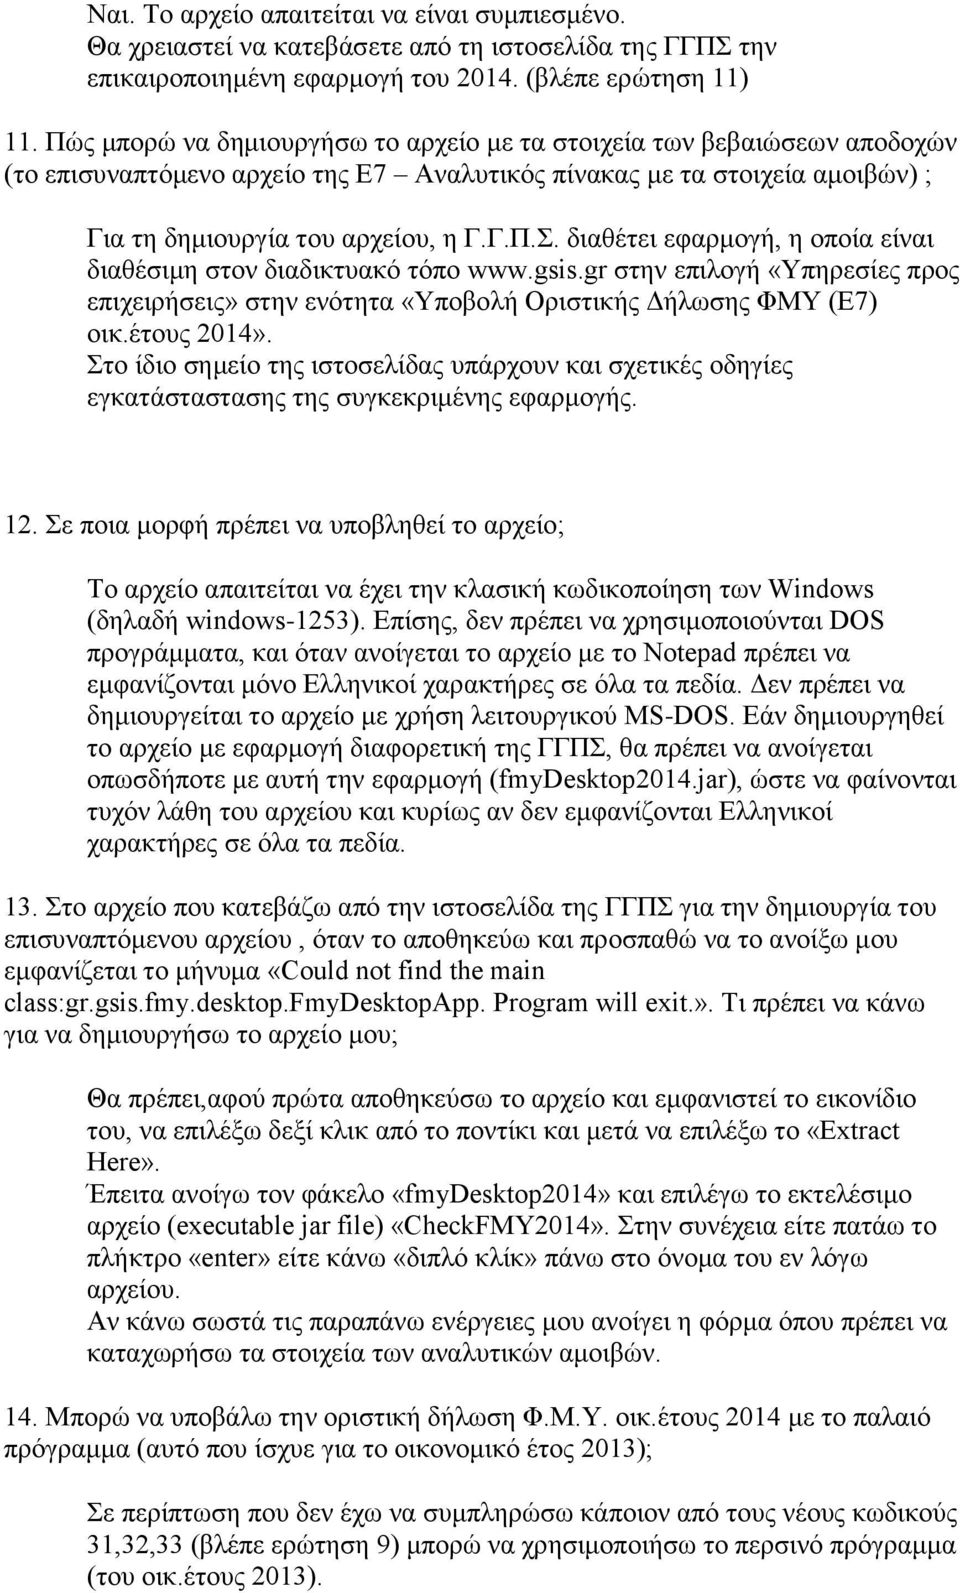 διαθέτει εφαρμογή, η οποία είναι διαθέσιμη στον διαδικτυακό τόπο www.gsis.gr στην επιλογή «Υπηρεσίες προς επιχειρήσεις» στην ενότητα «Υποβολή Οριστικής Δήλωσης ΦΜΥ (Ε7) οικ.έτους 2014».